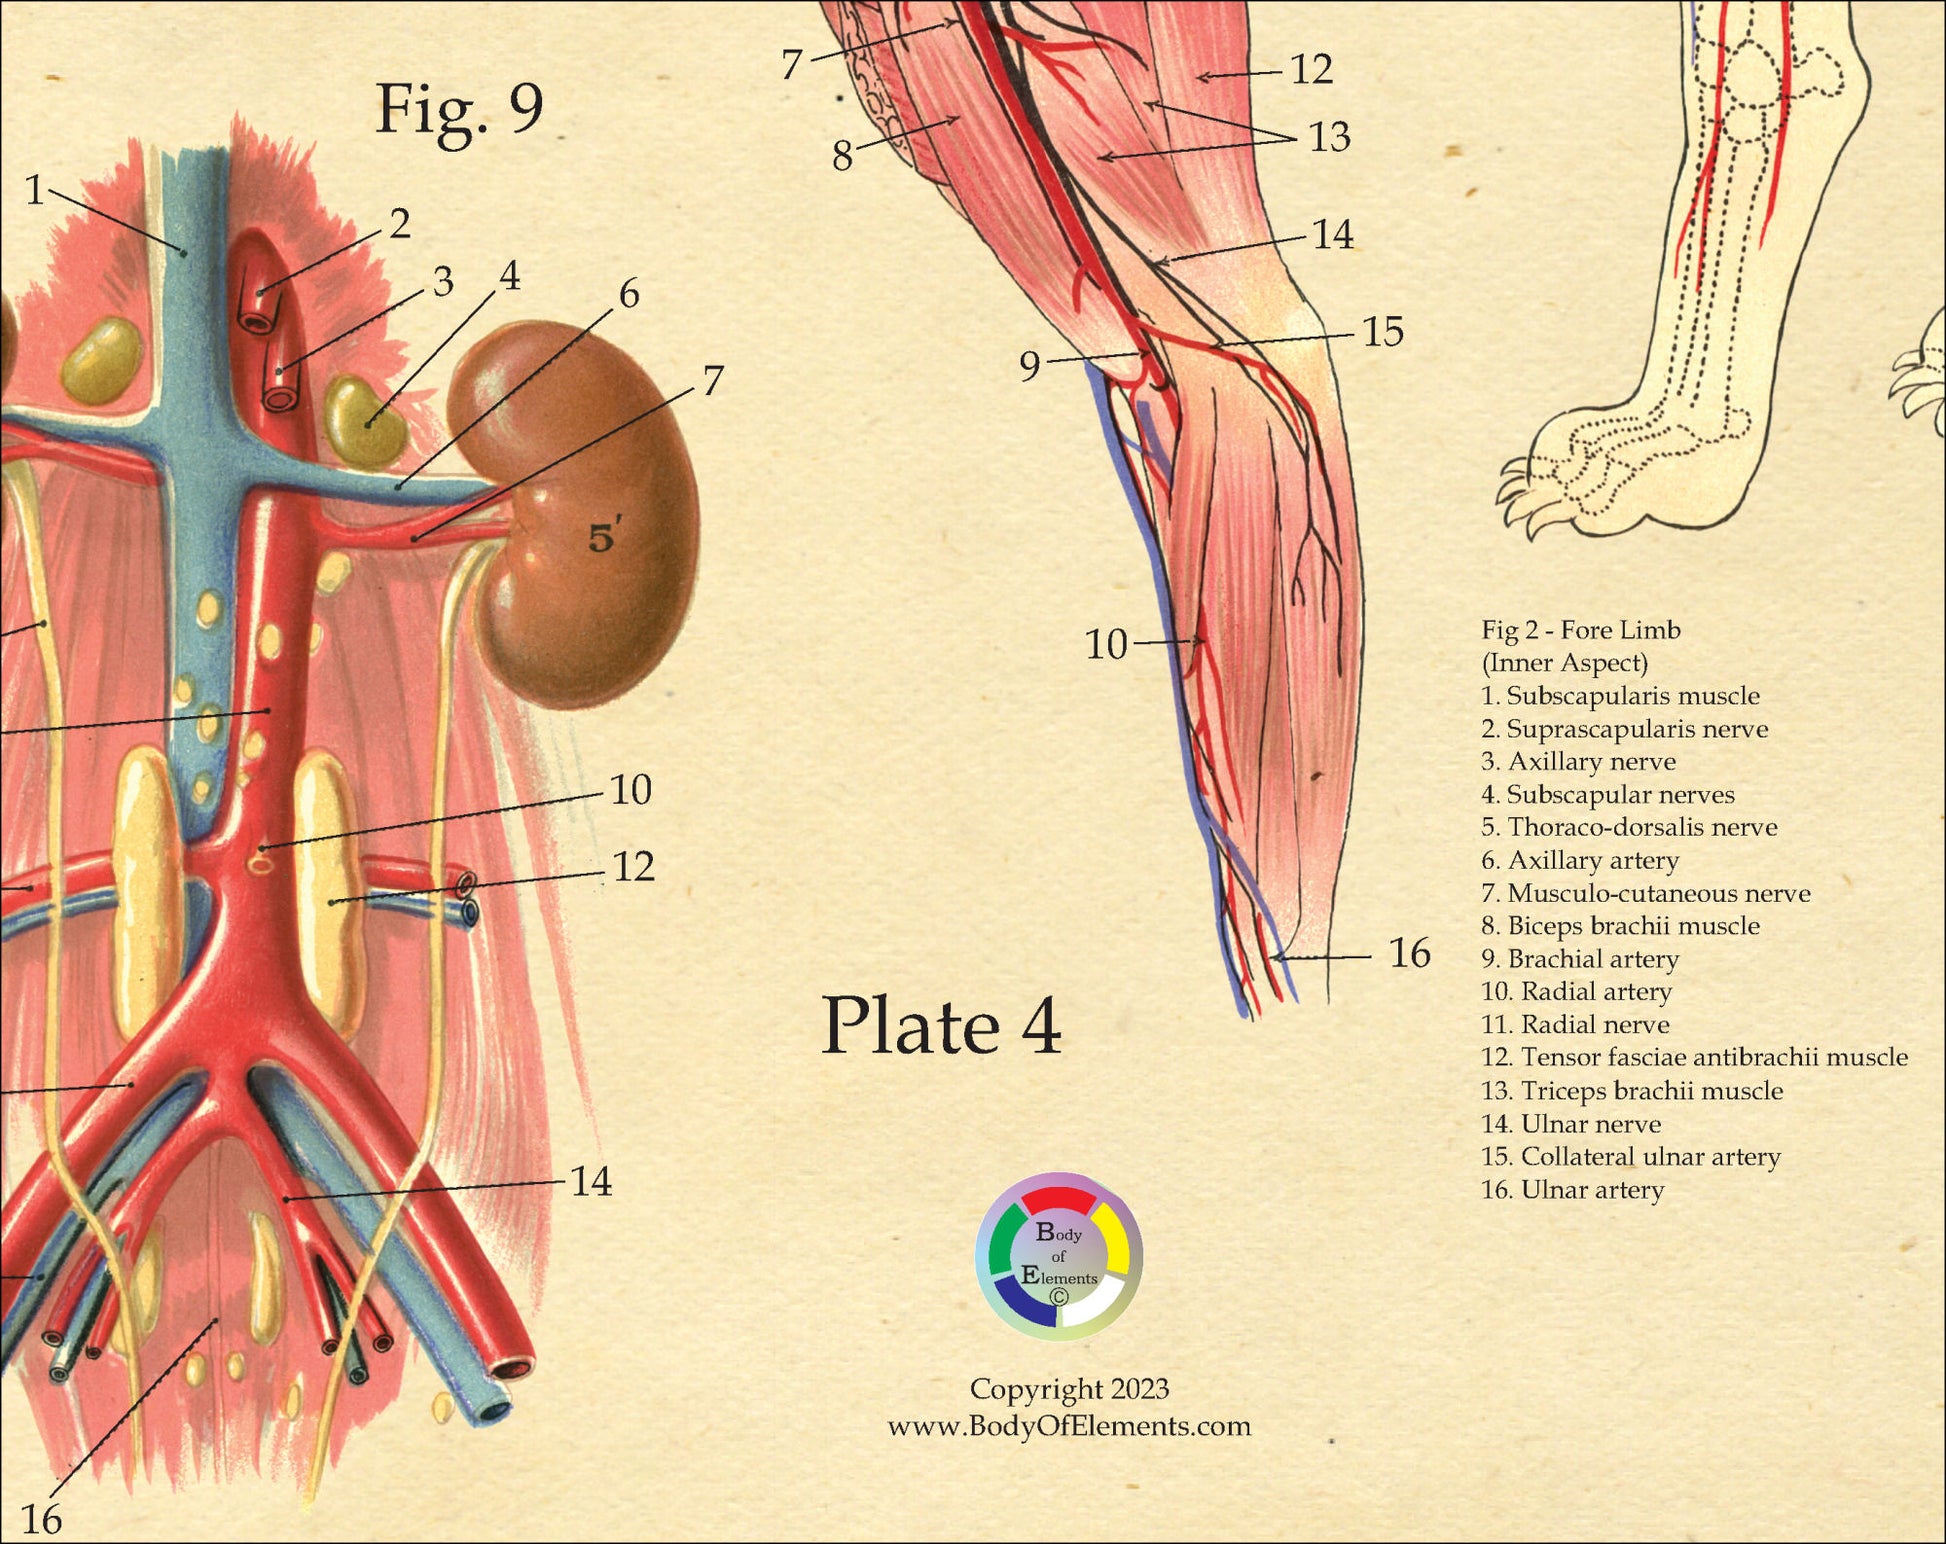 Dog vascular anatomy poster